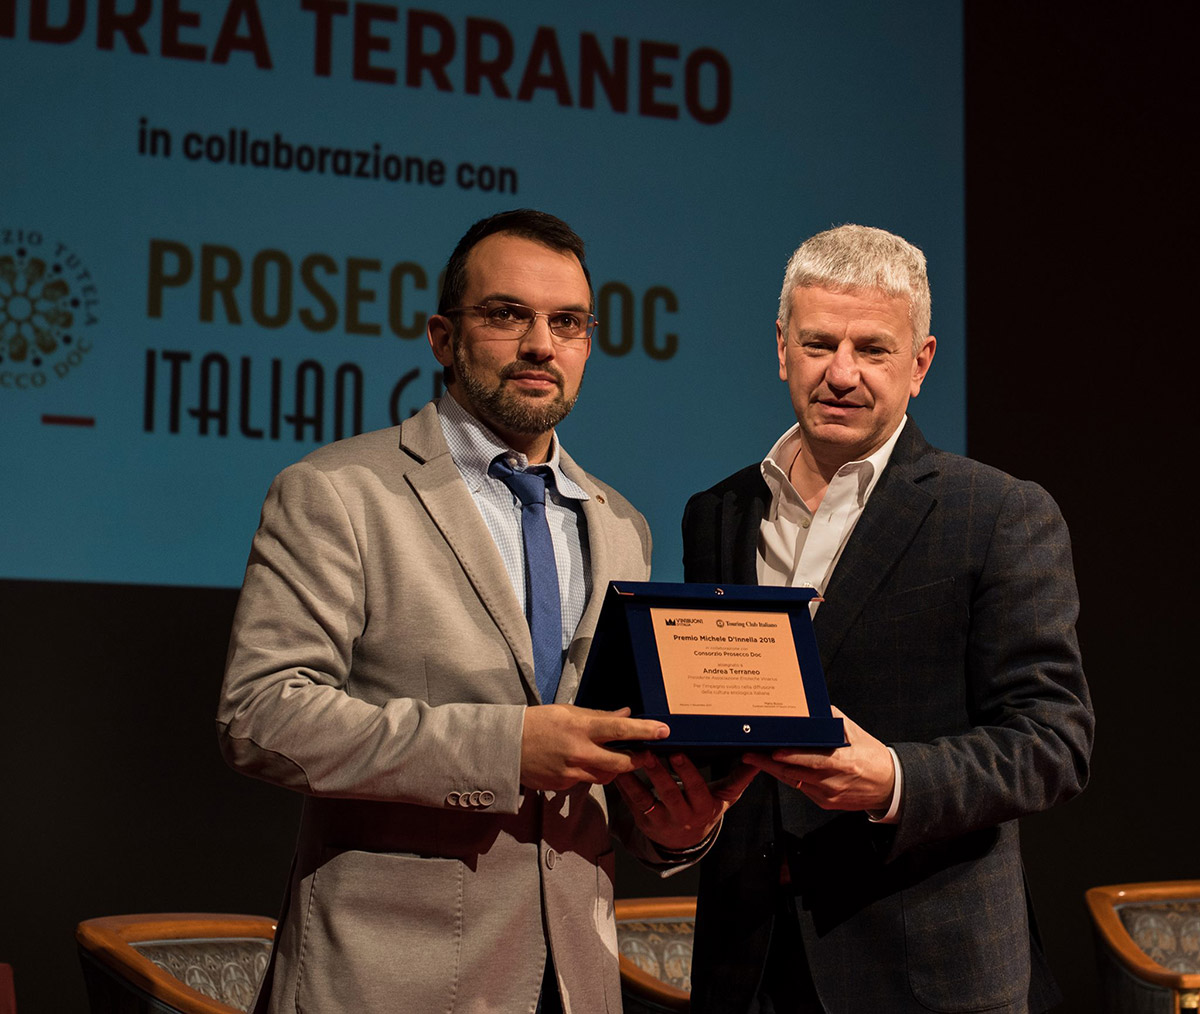 Premio Michele D'Innella 2018